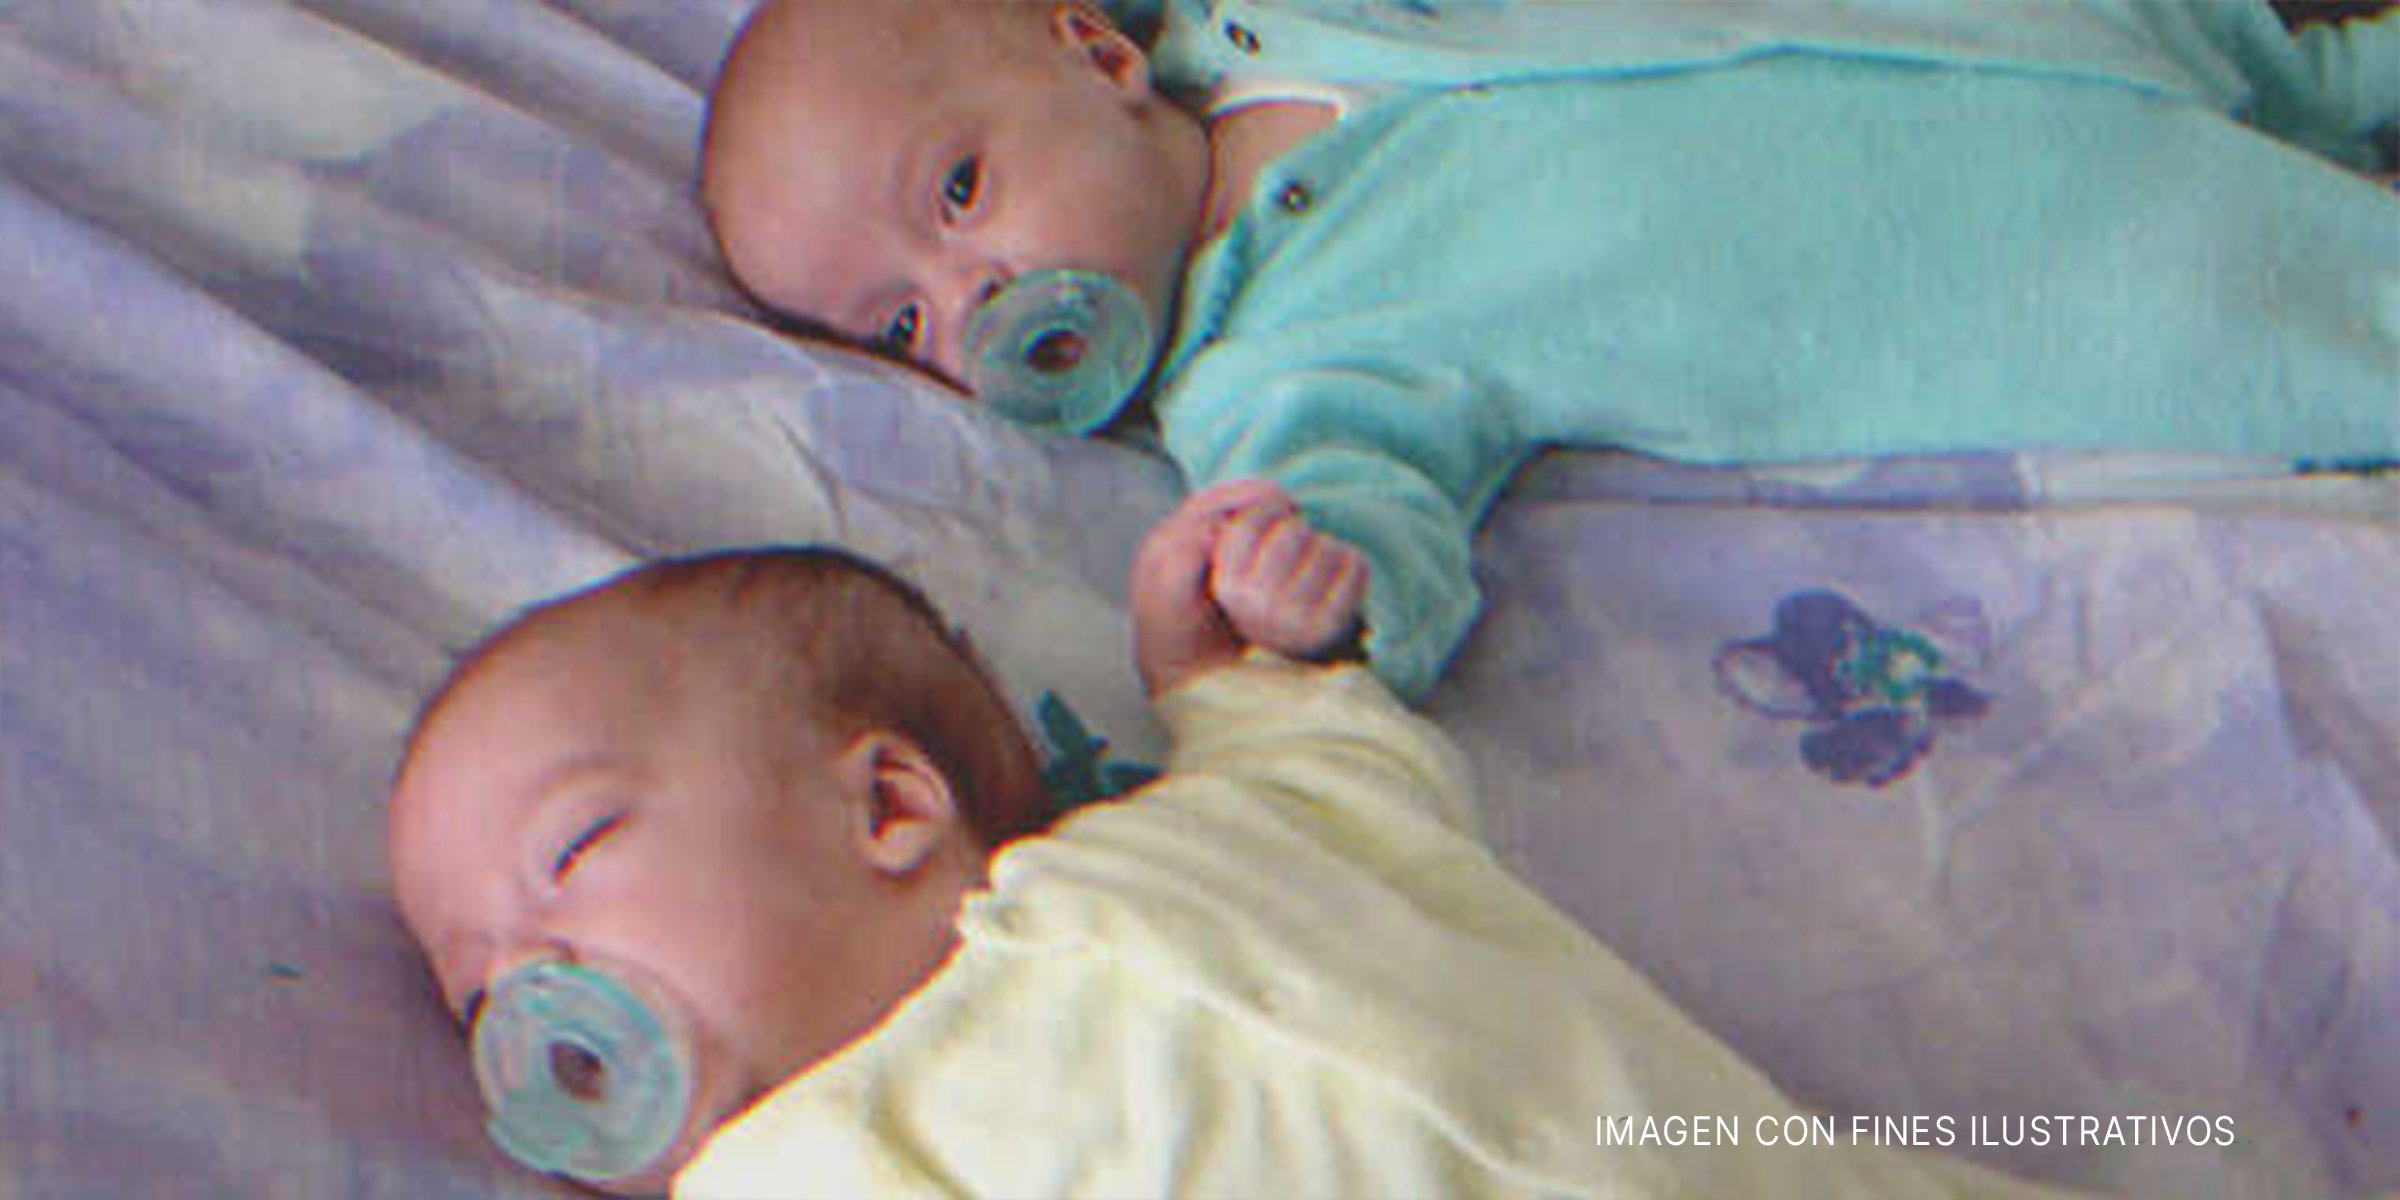 Gemelos recién nacidos en una cama | Foto: Flickr/goldberg (CC BY 2.0)